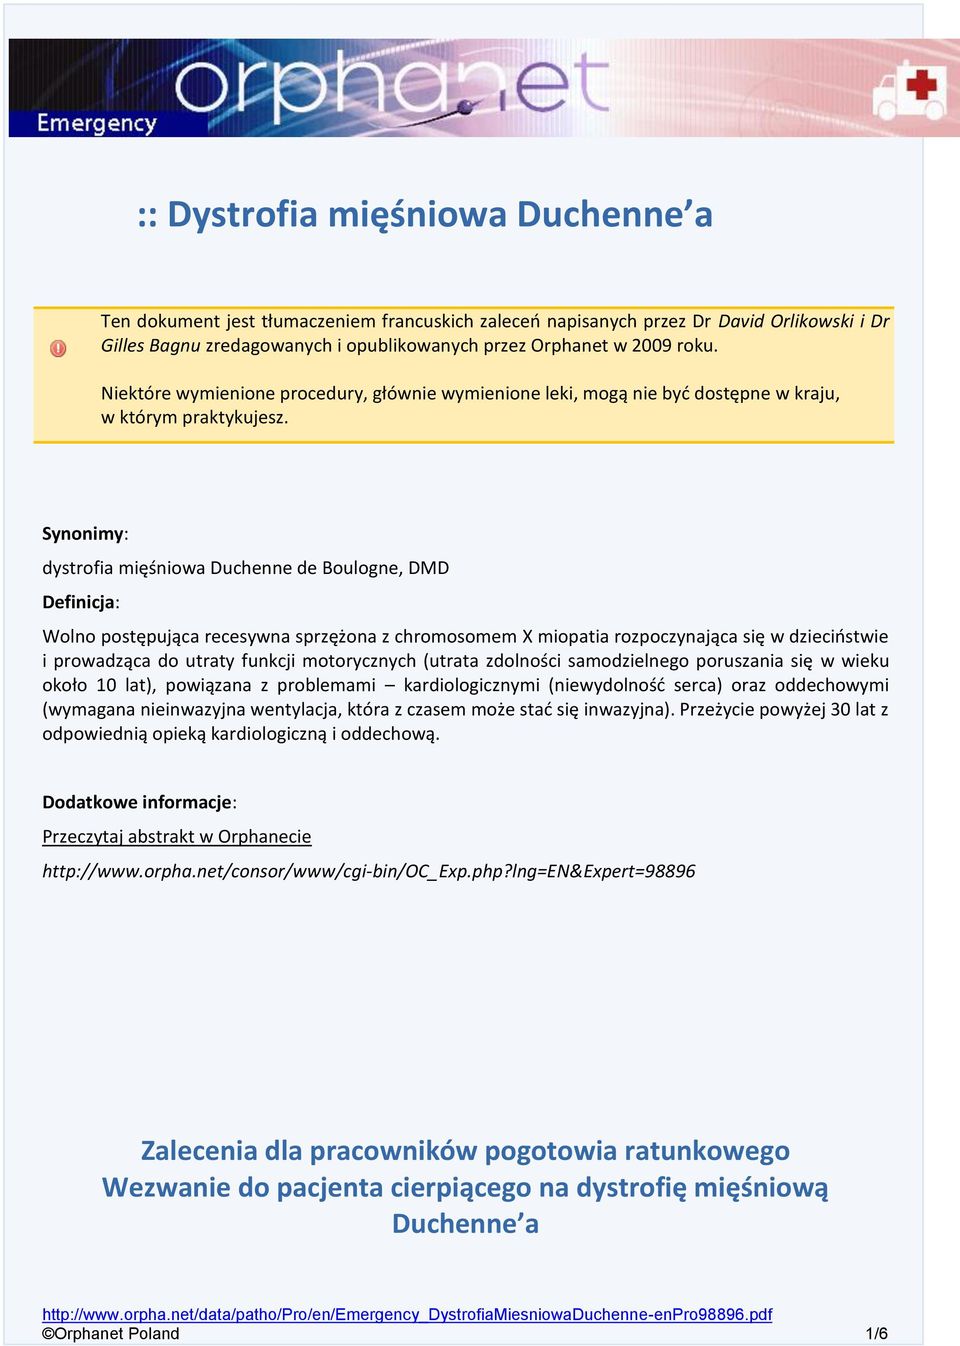 Synonimy: dystrofia mięśniowa Duchenne de Boulogne, DMD Definicja: Wolno postępująca recesywna sprzężona z chromosomem X miopatia rozpoczynająca się w dzieciństwie i prowadząca do utraty funkcji